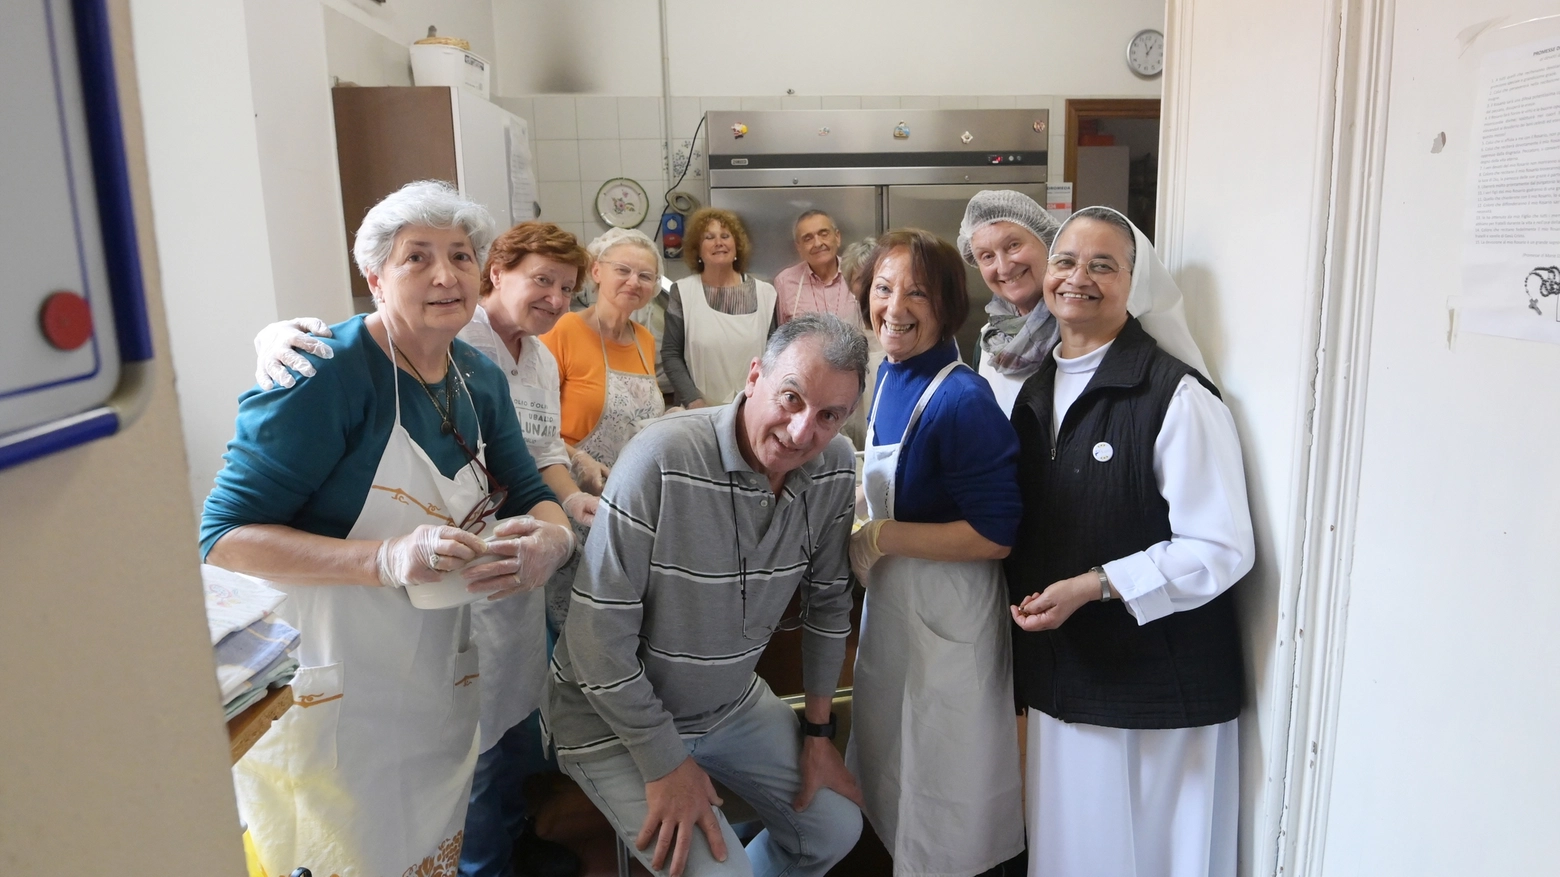 Suor Maria Teresa con i suoi volontari (fonte: fotoschicchi)